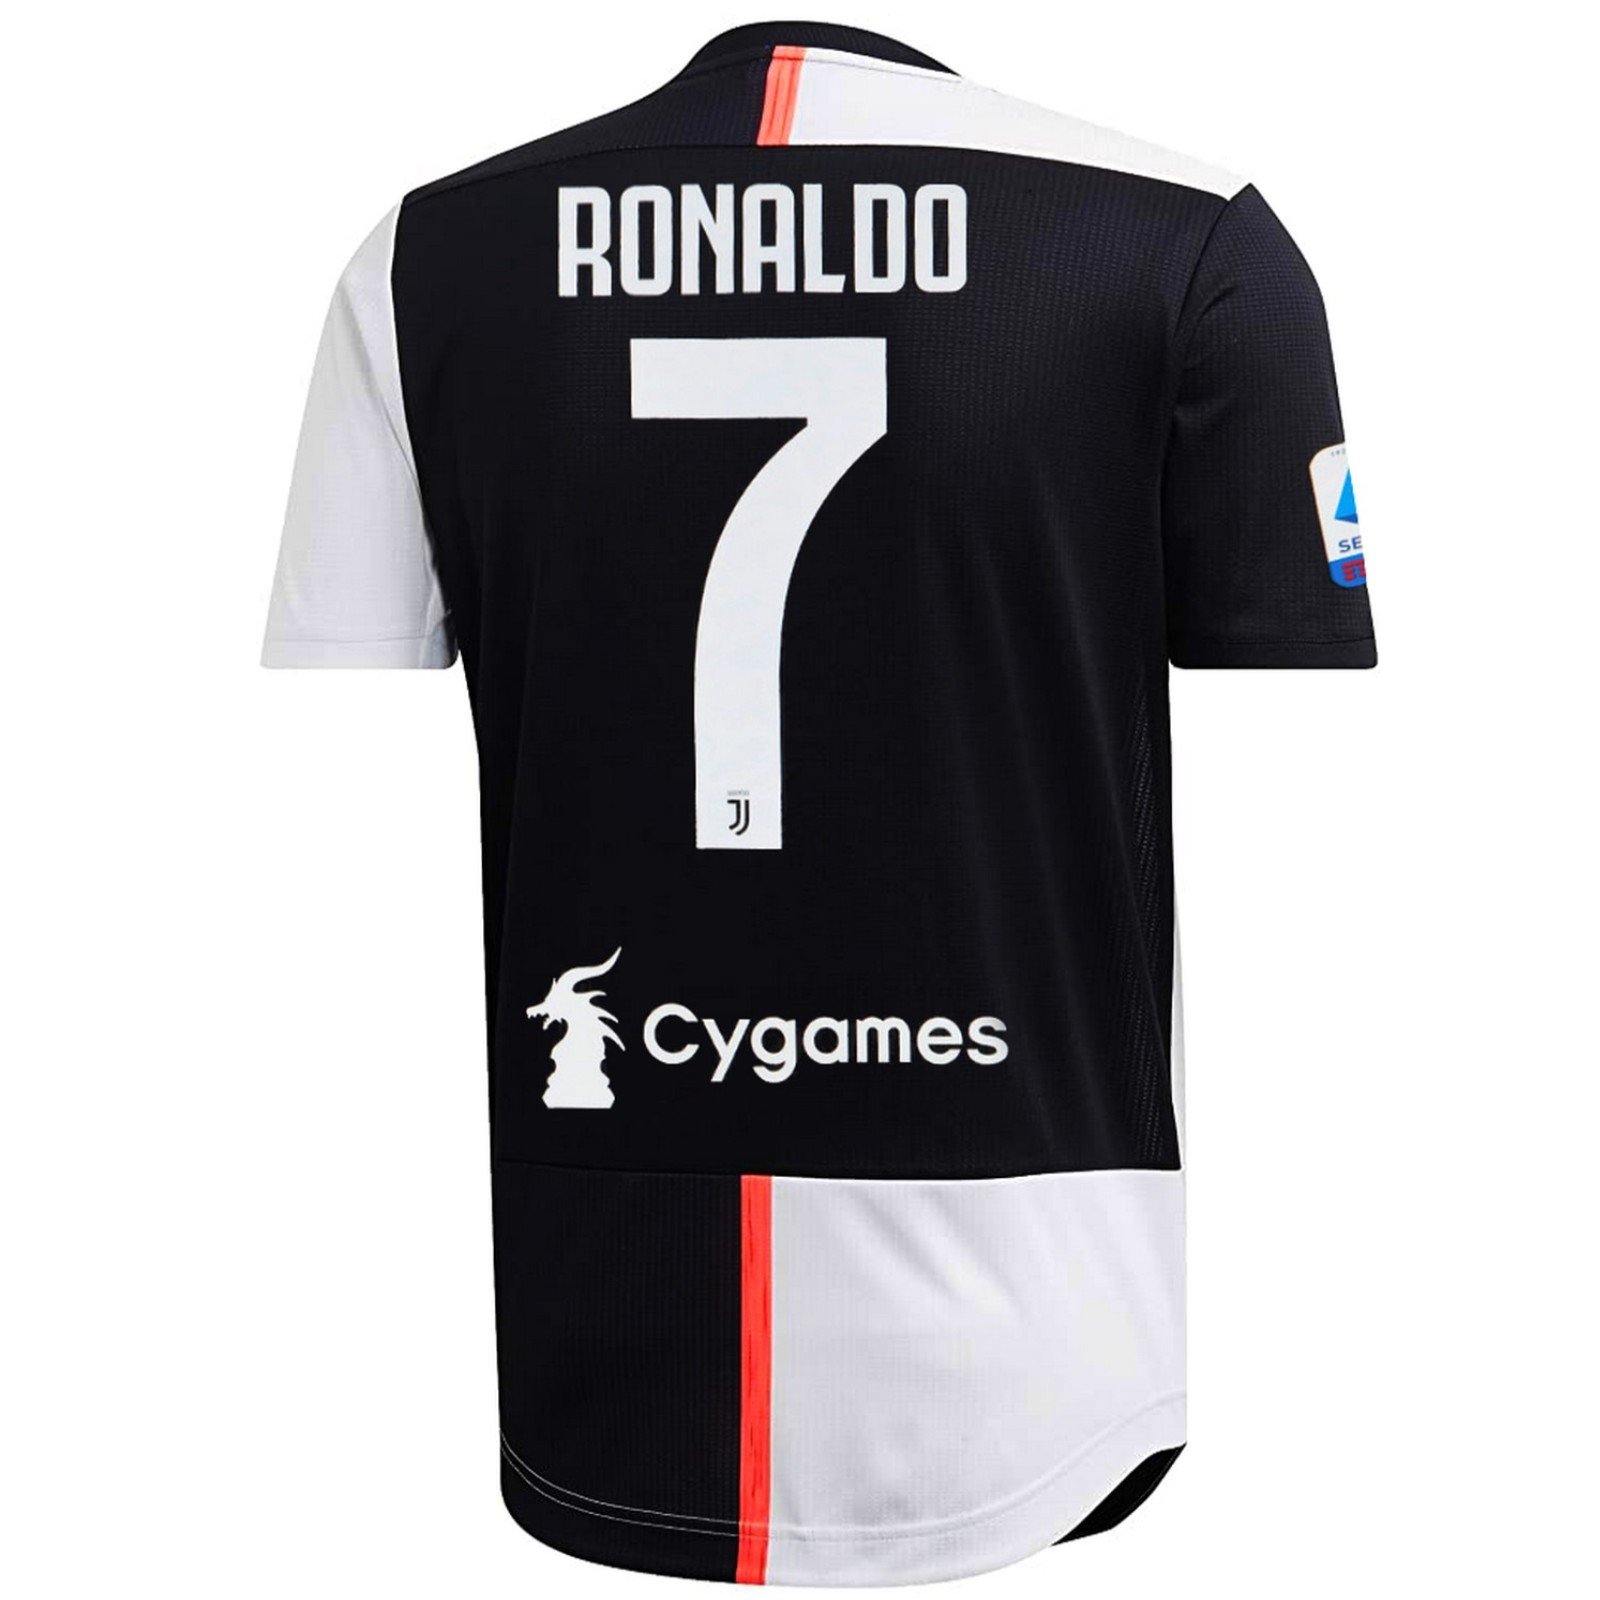 ronaldo shirt juventus